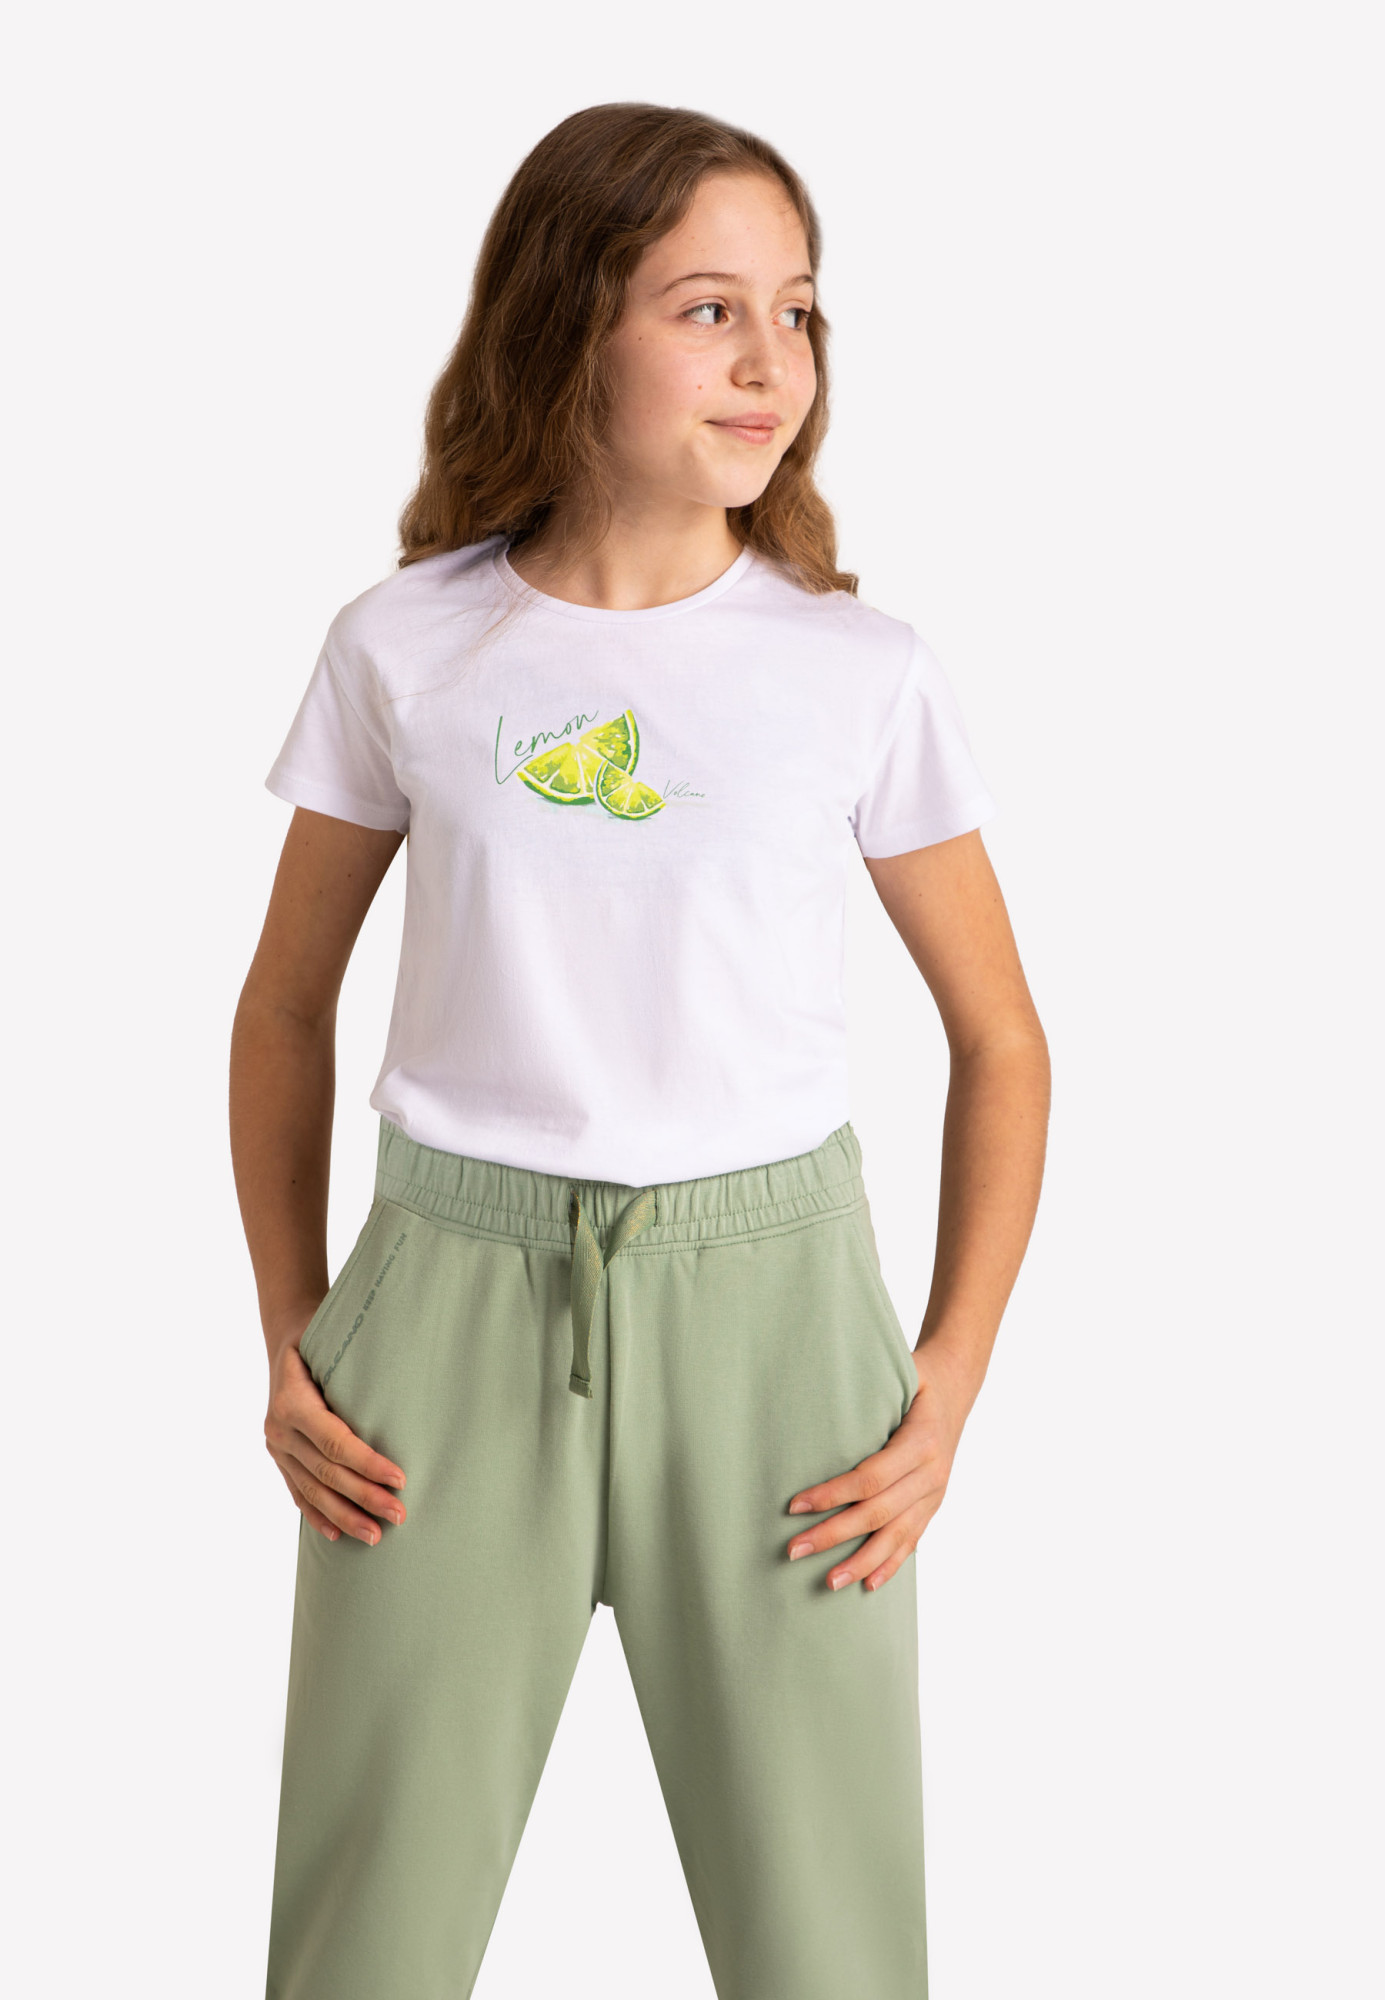 Volcano Regular T-Shirt T-Lemon Junior G02473-S22 White 122/128